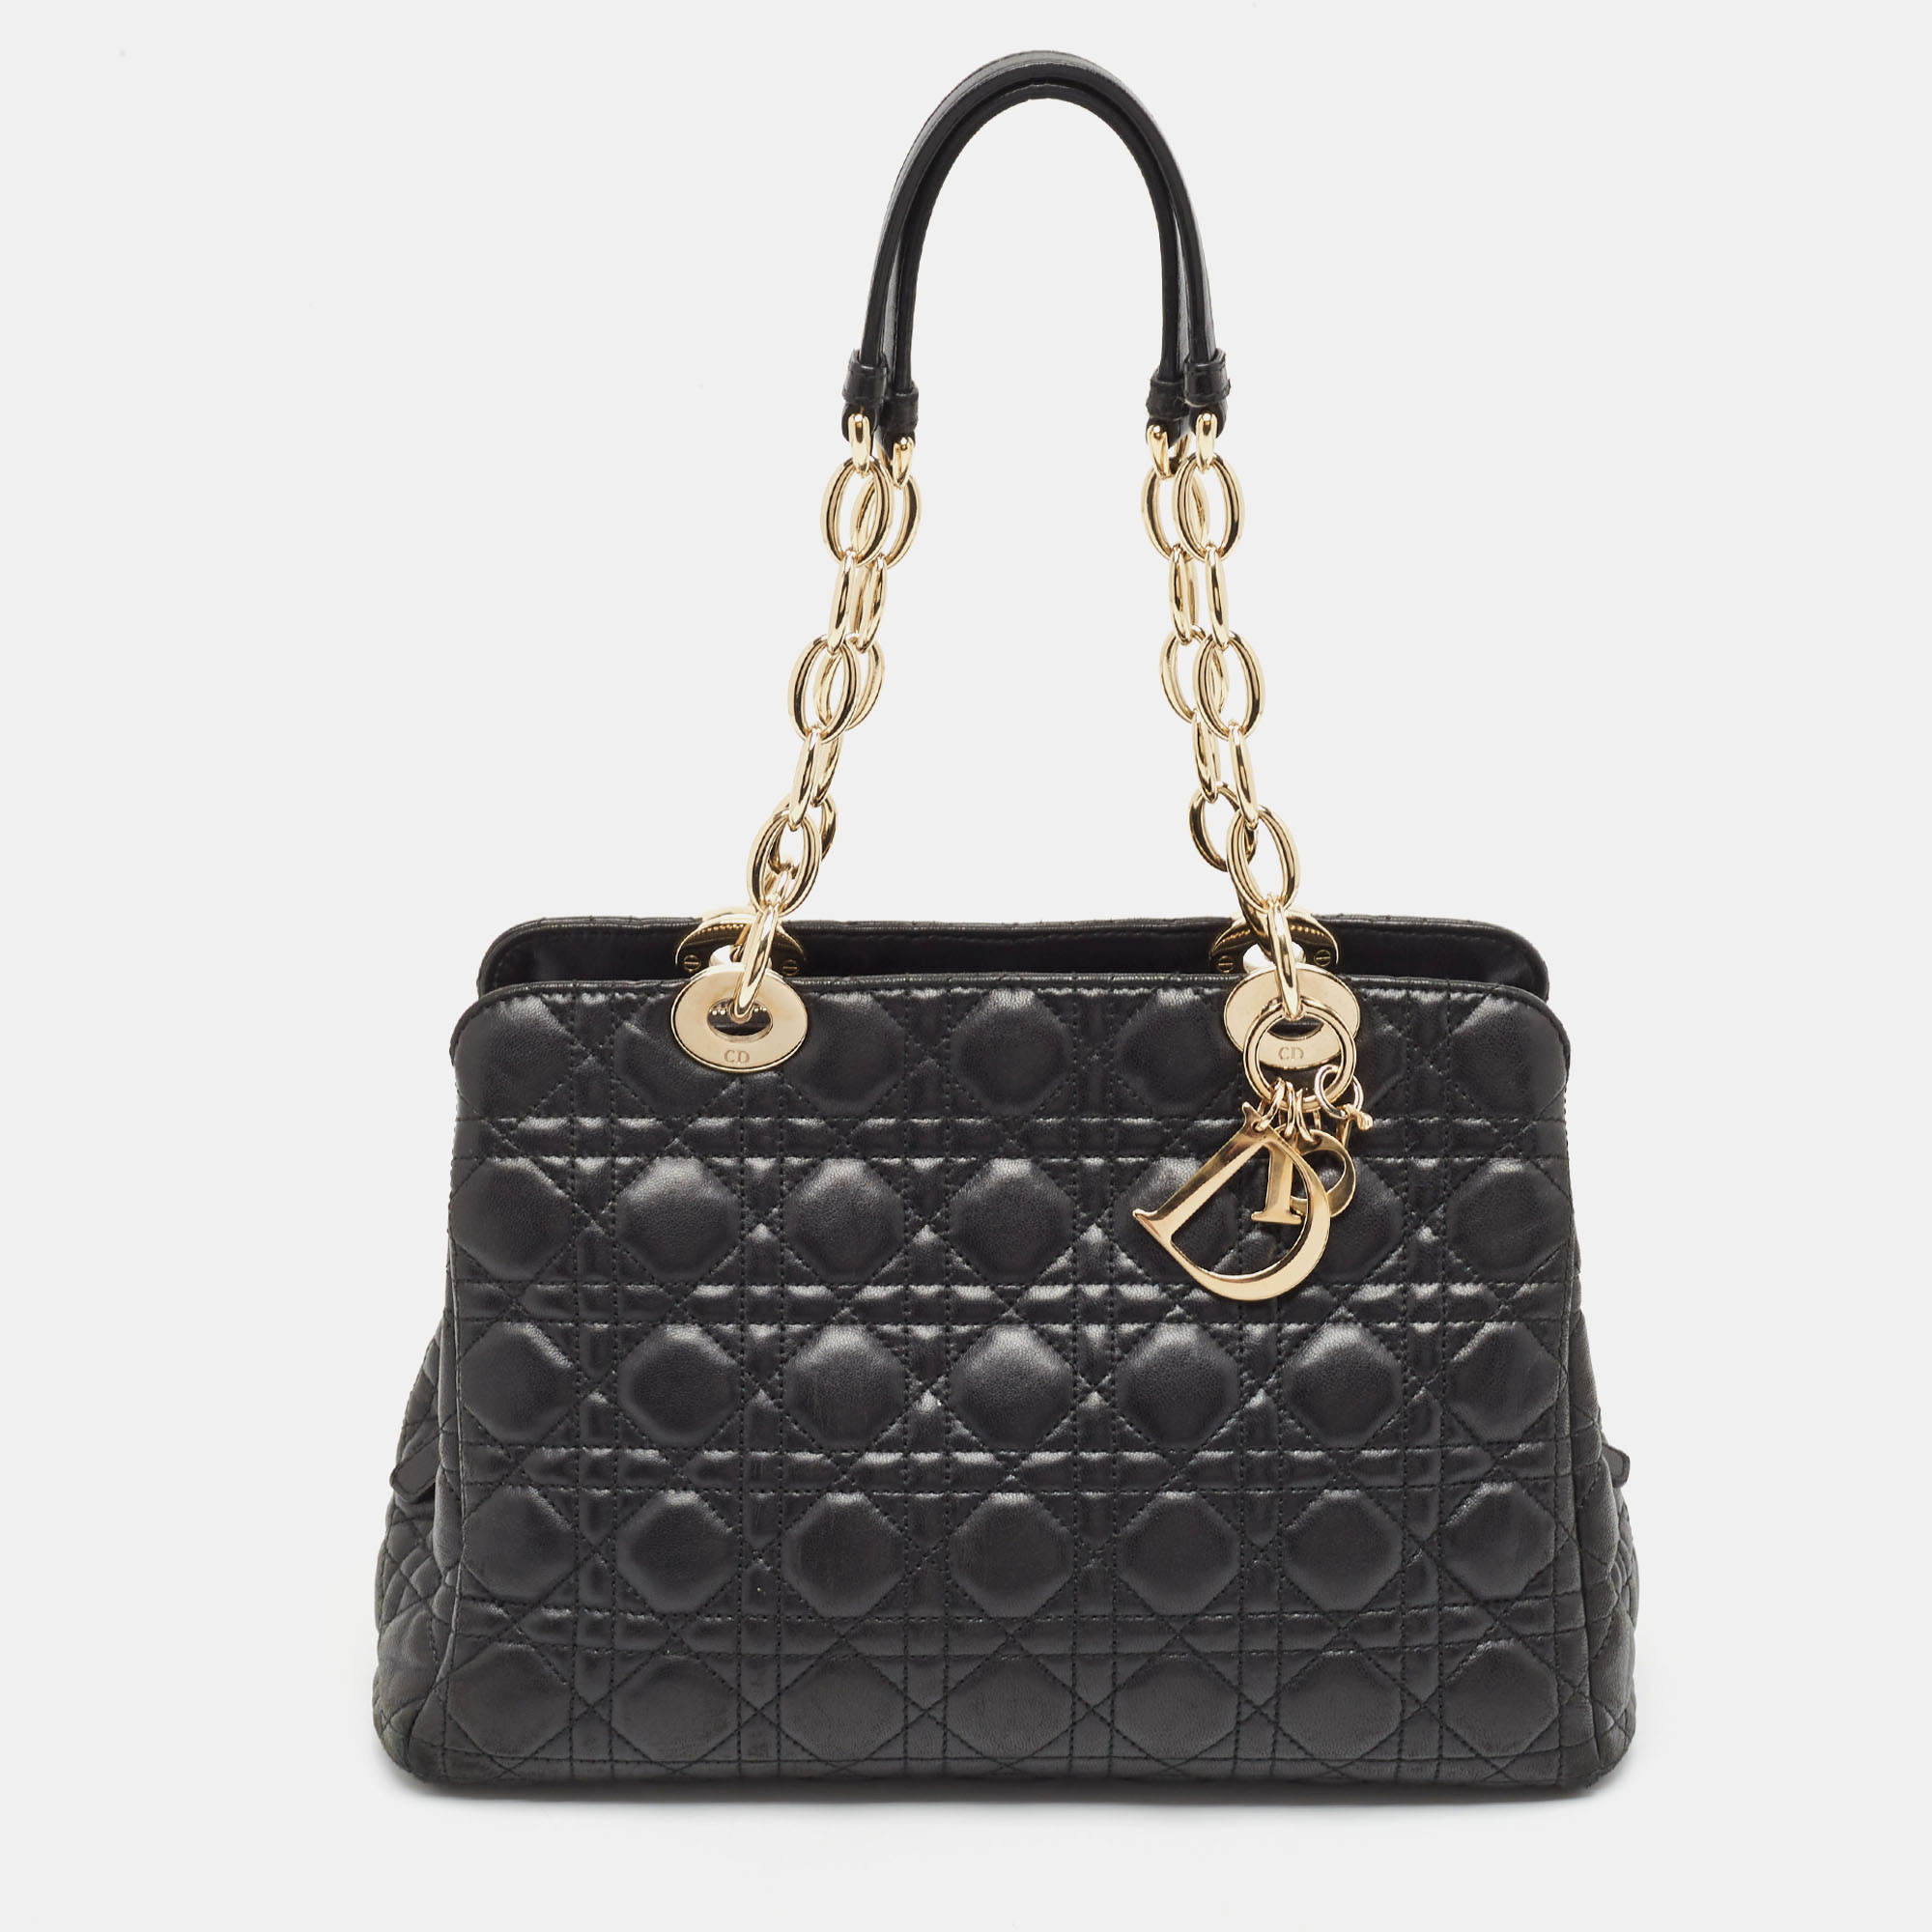 Dior black cannage leather soft lady dior satchel